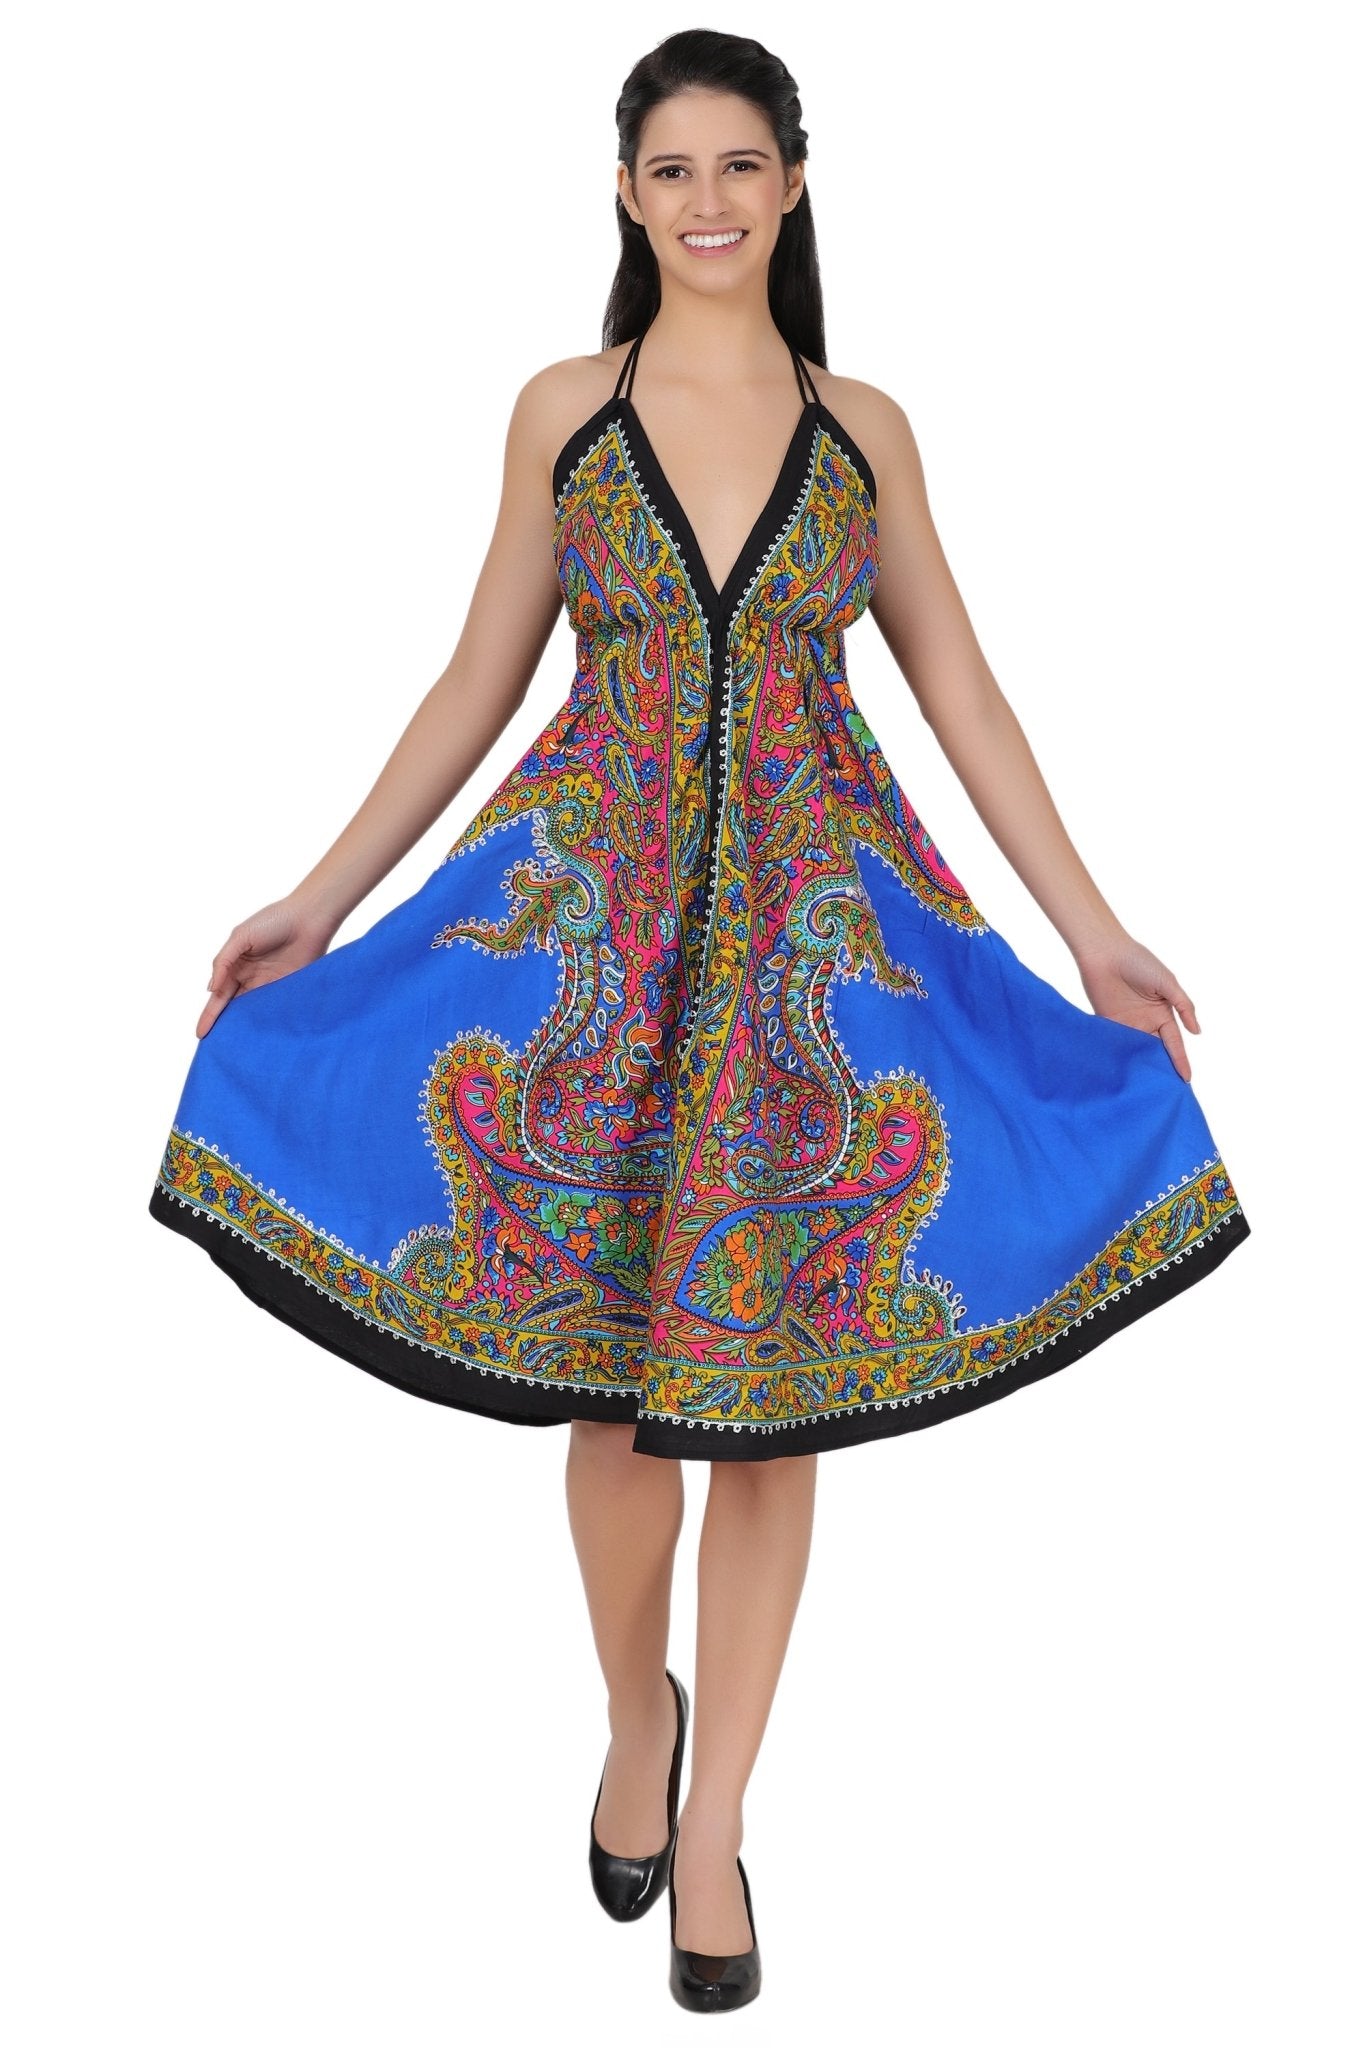 Halter Top Elastic Back Mid-Length Batik Dress PD-9706 - Advance Apparels Inc